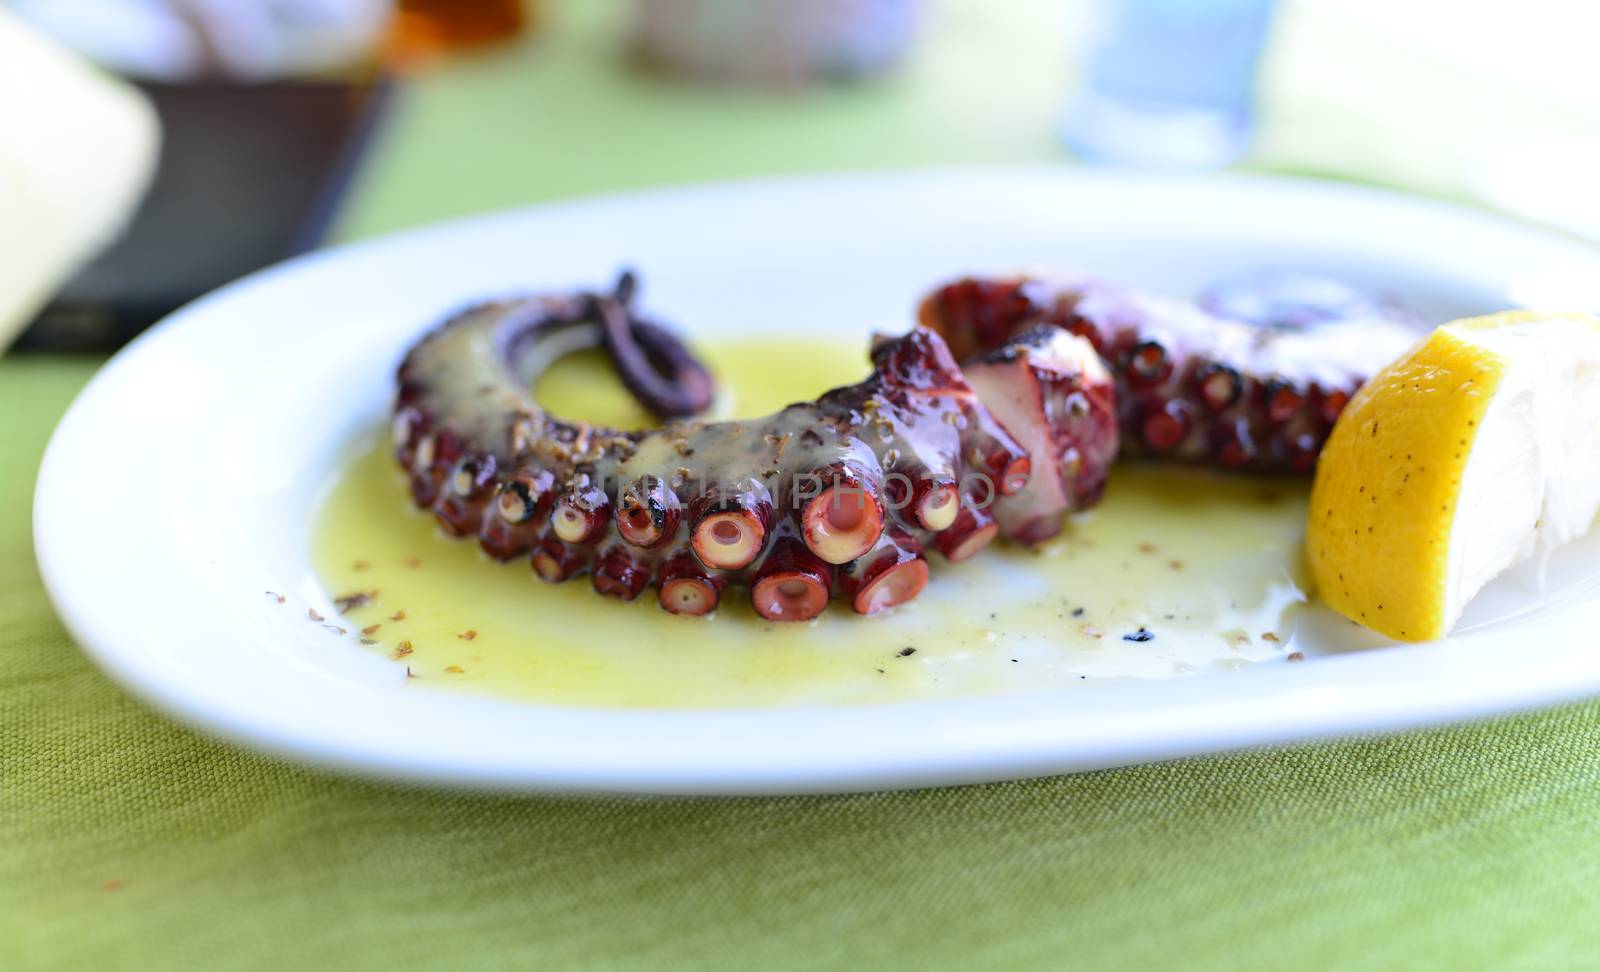 sea food restaurant octopus tentacle plate detail